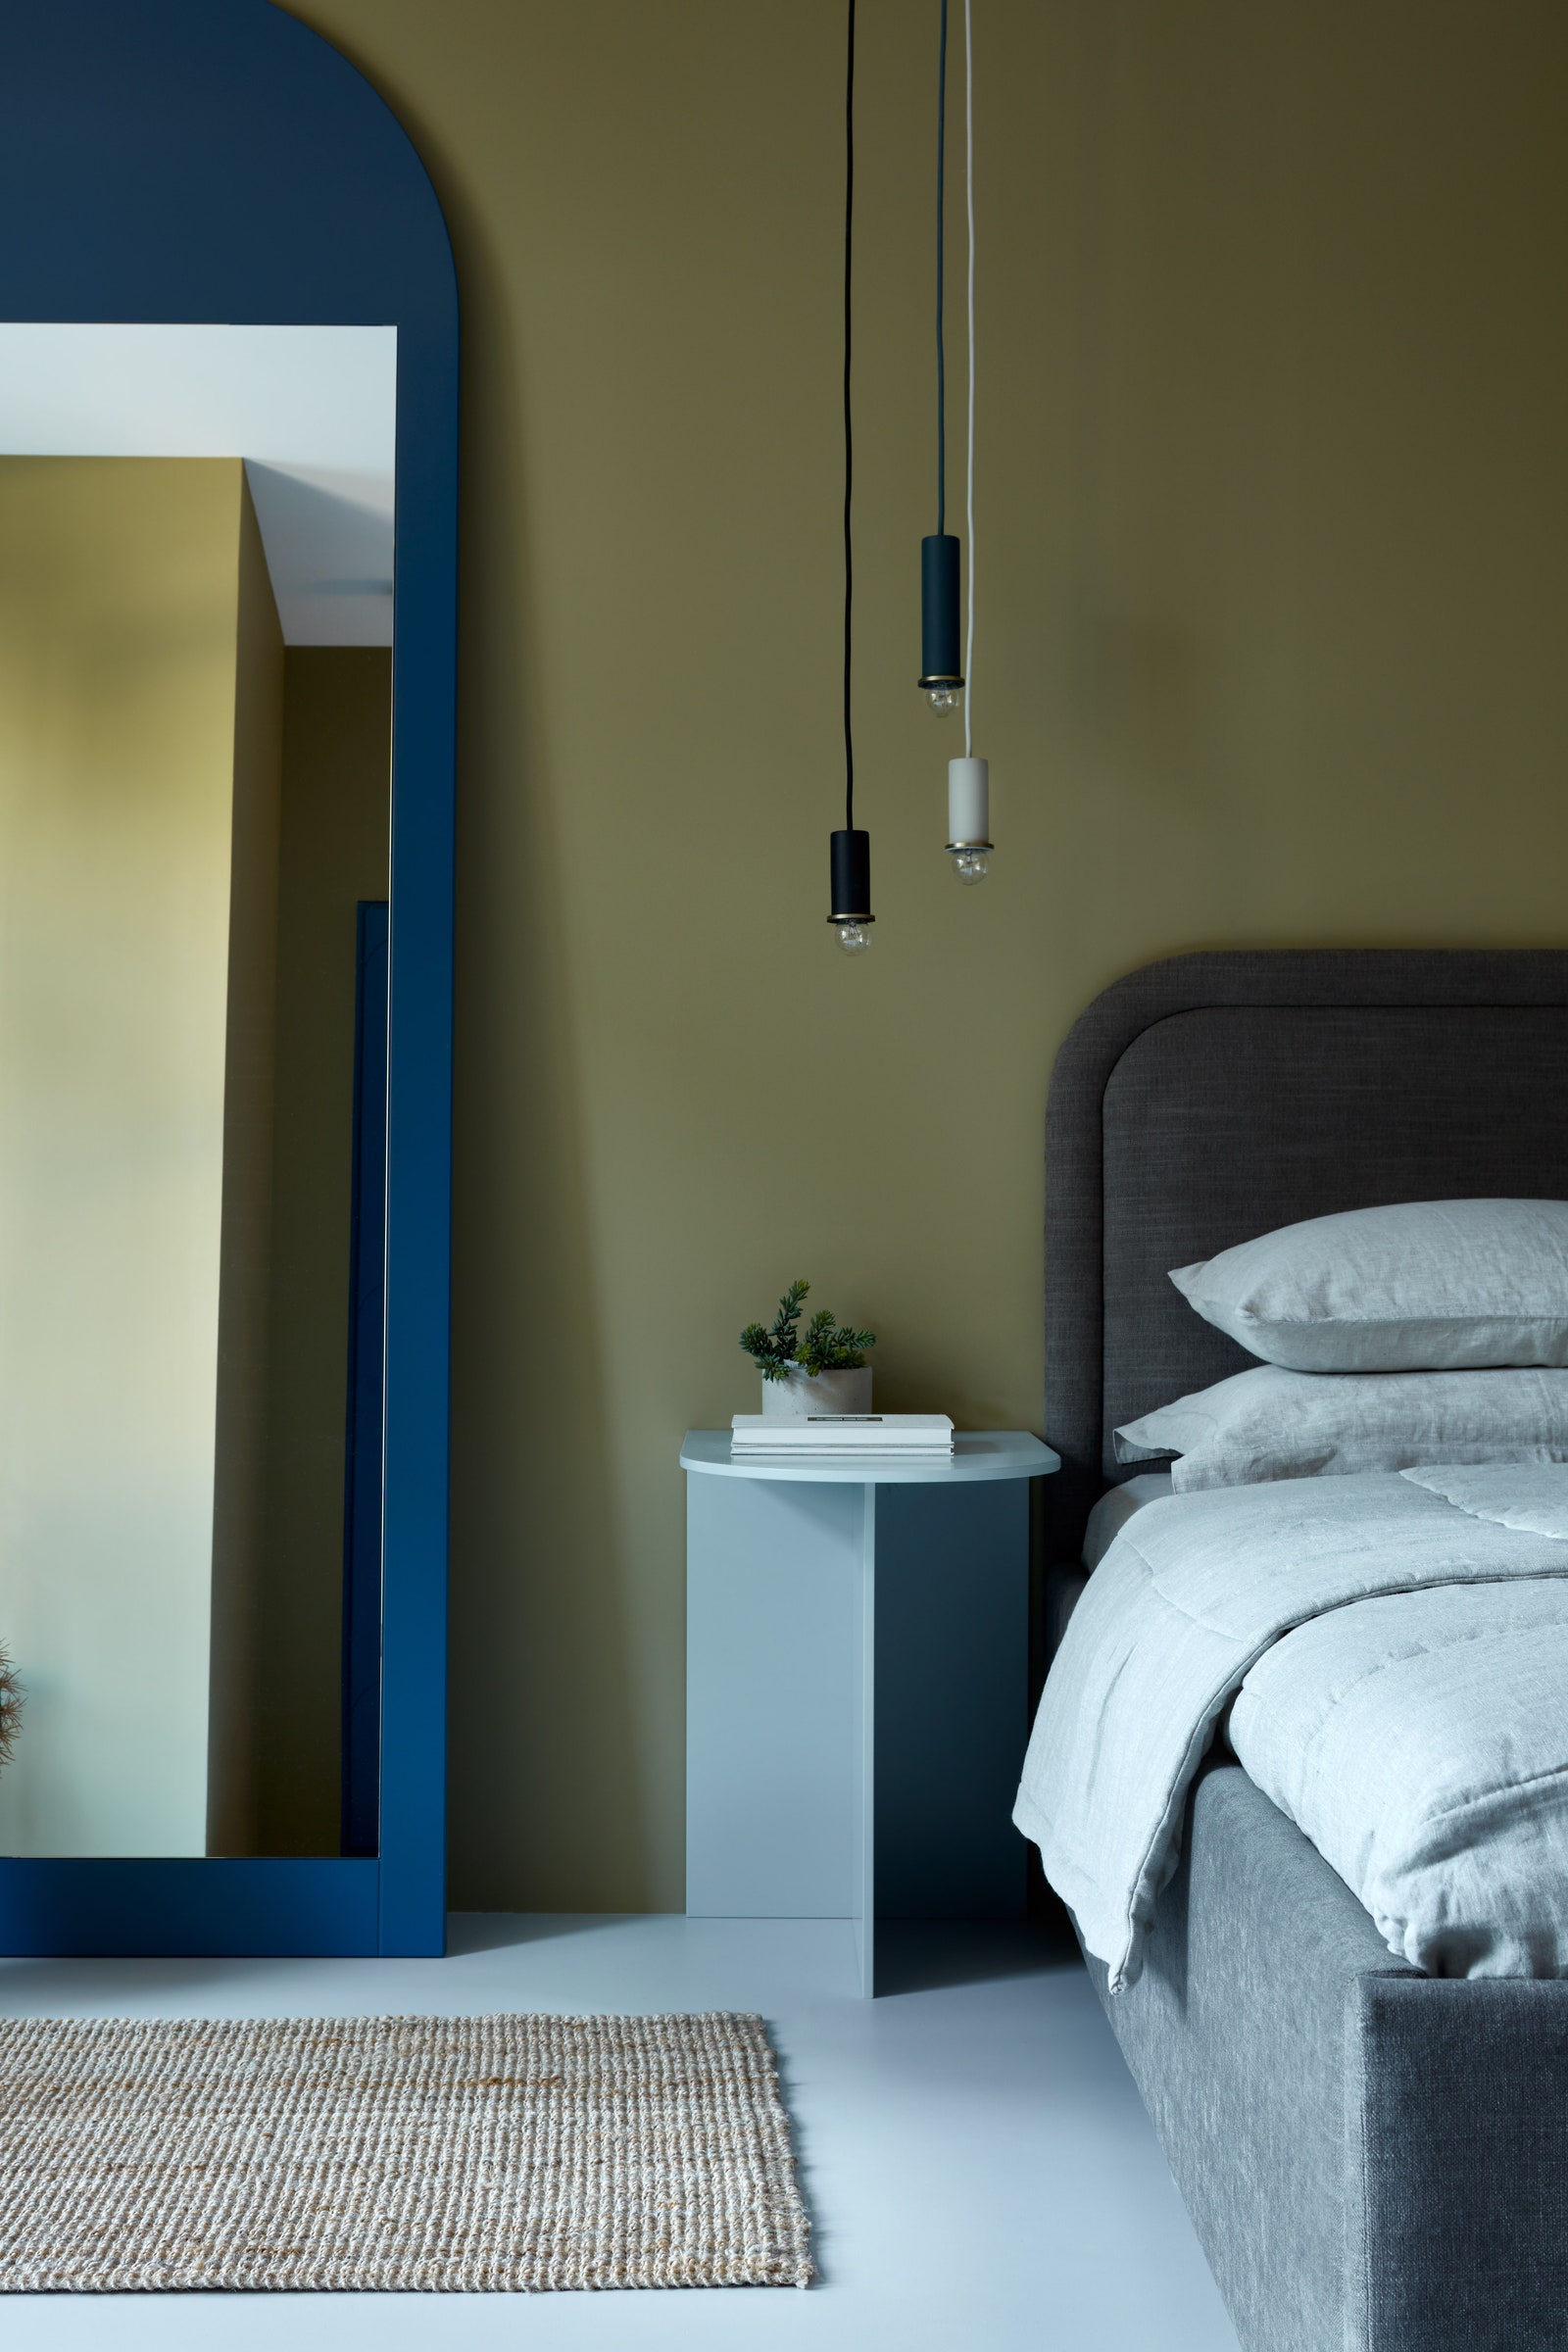 Фрагмент спальни. Зеркало сделано по эскизам дизайнера светильники Ferm Living кровать Enjoy Home прикроватный столик...